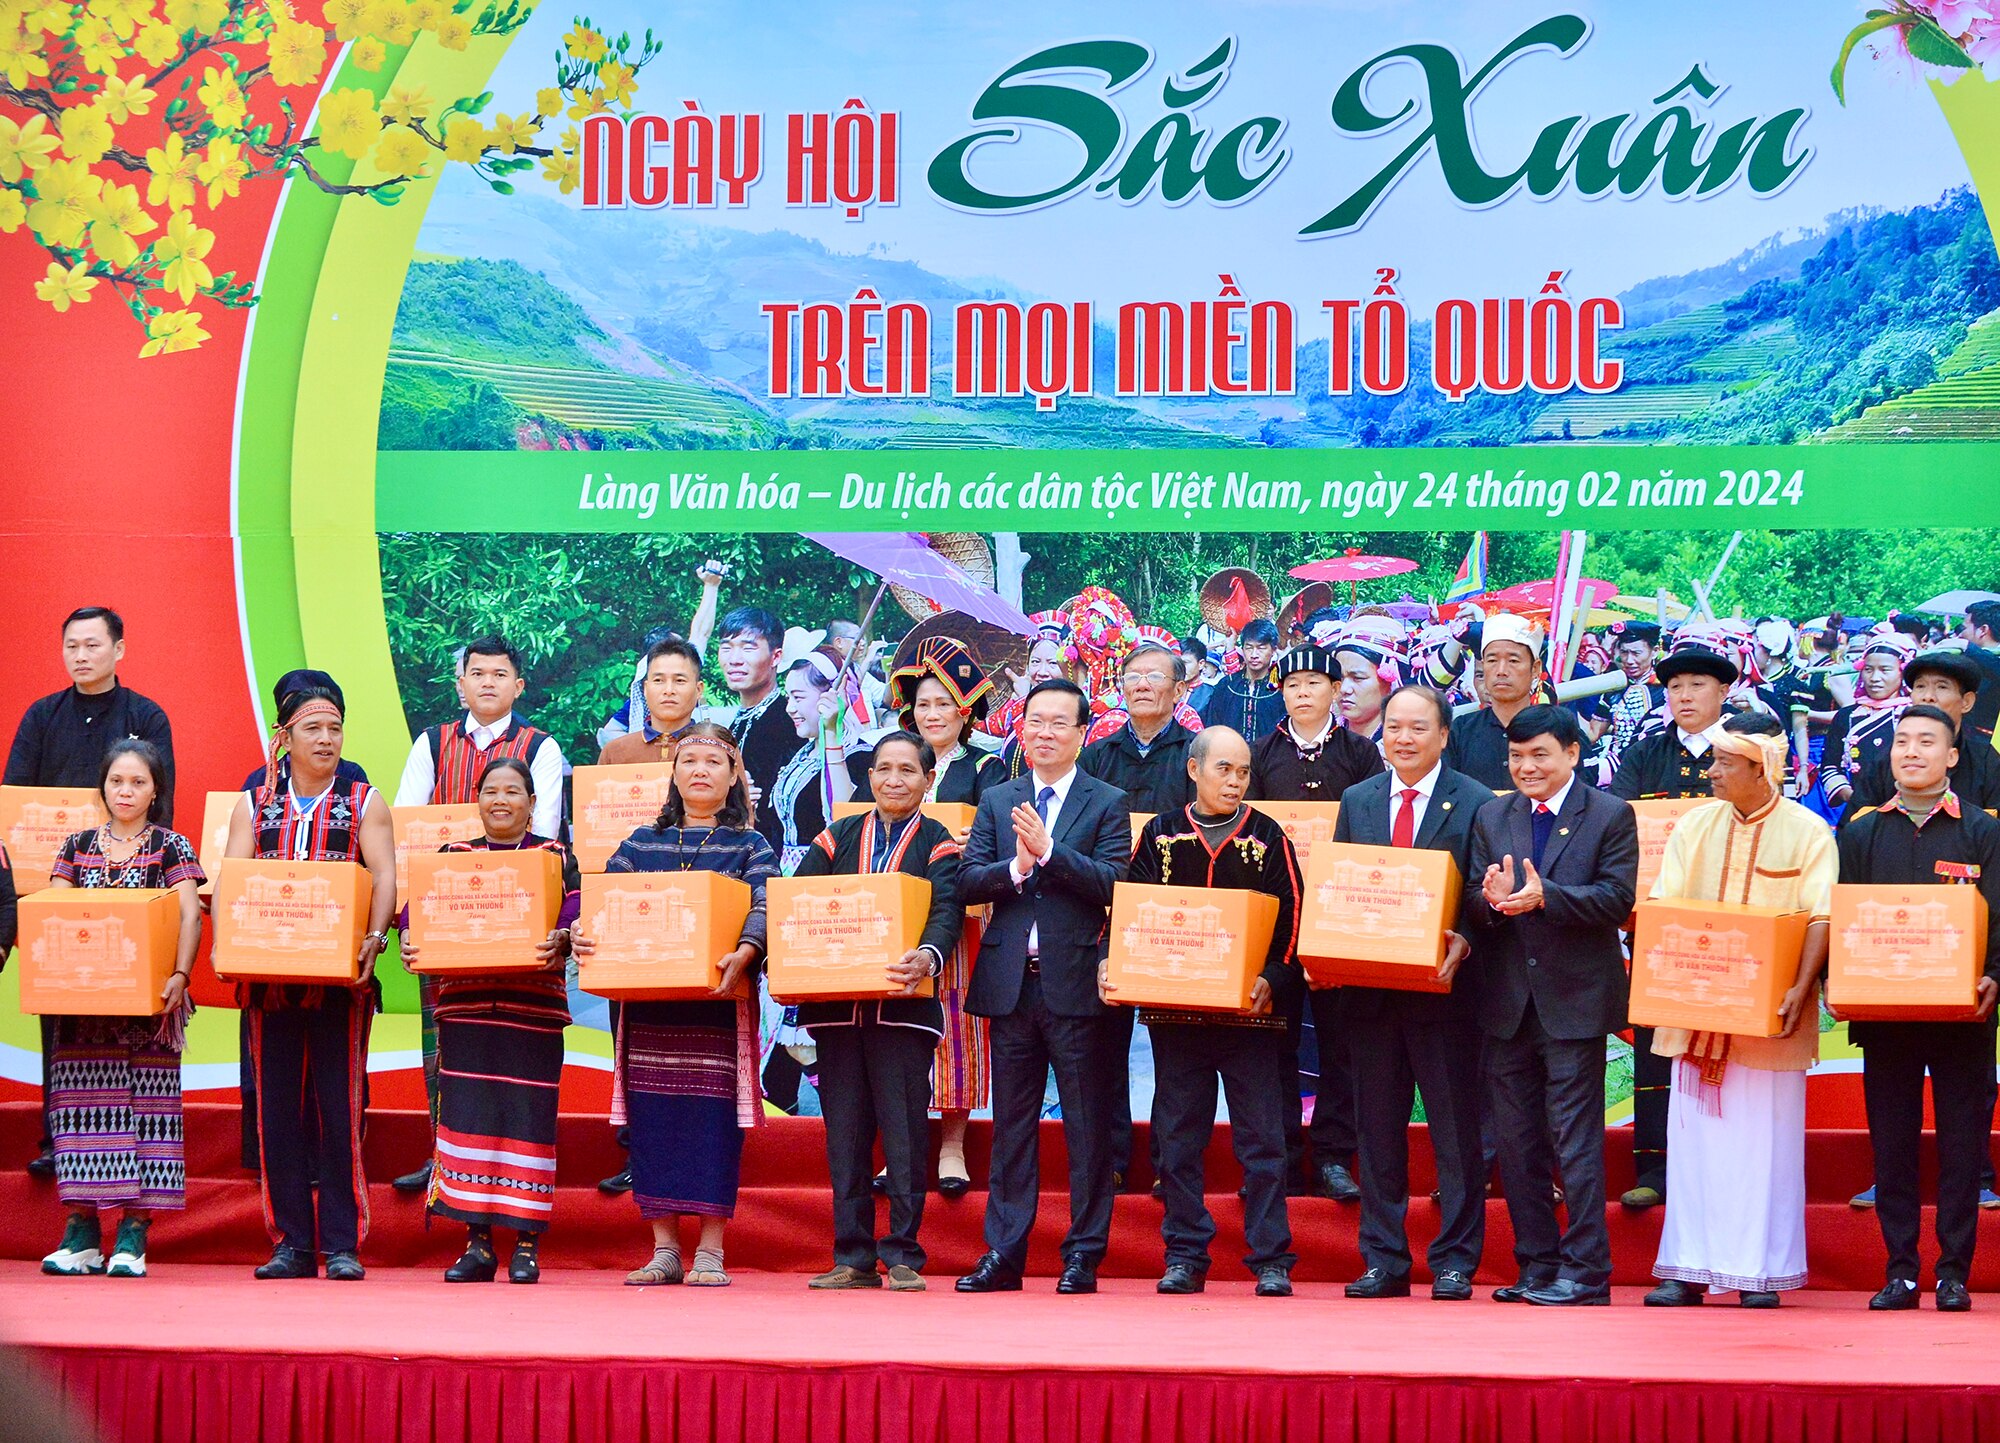 Chủ tịch nước Võ Văn Thưởng dự hội trỉa lúa, múa xòe cùng đồng bào dân tộc- Ảnh 3.